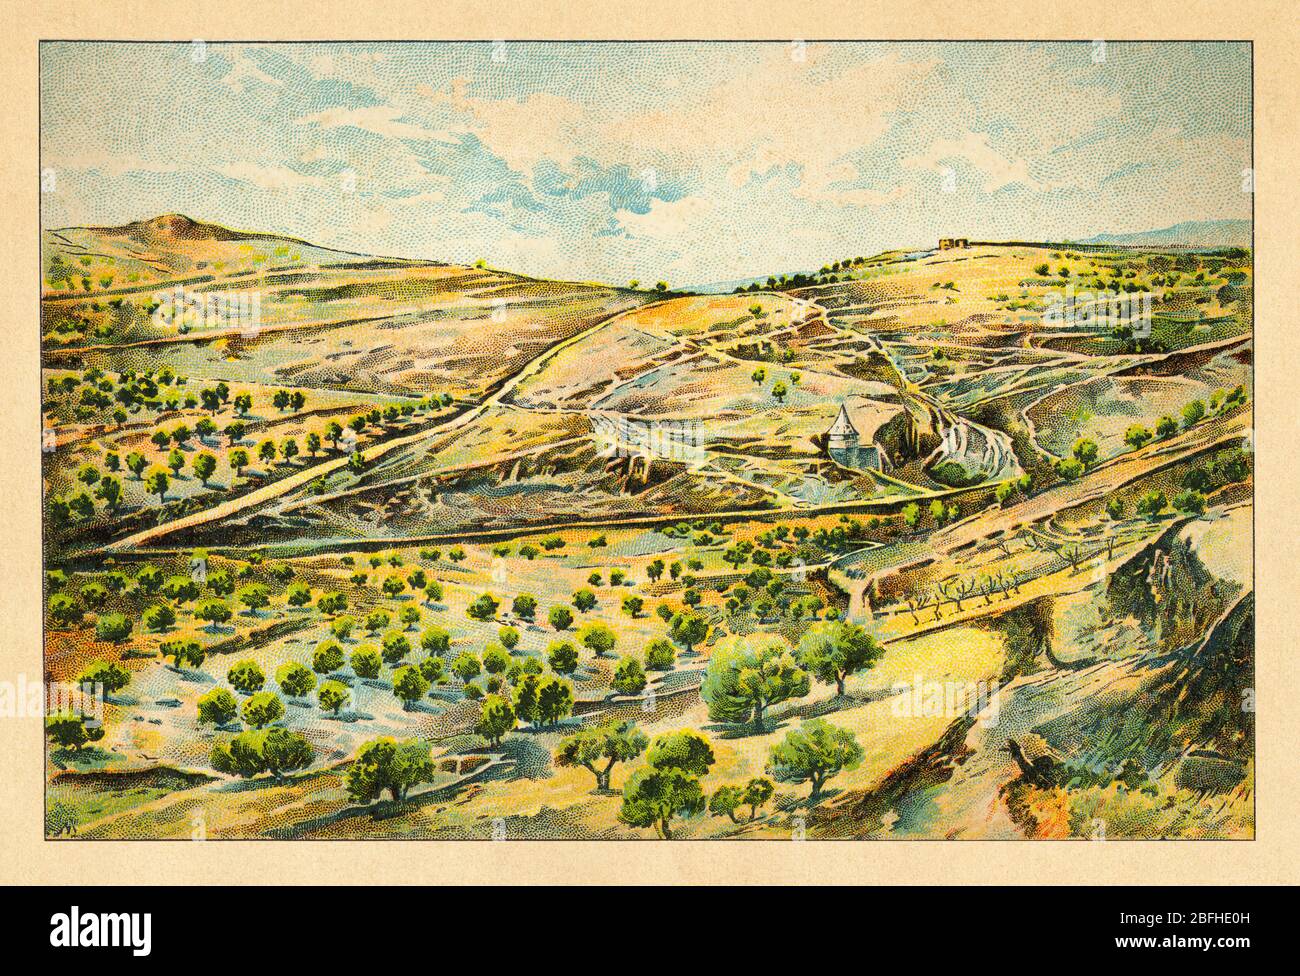 Vue sur le paysage vallée de Josaphat ou vallée de Josaphat. Israël, ancienne chromolithographie de couleur la Terre Sainte 1898 Banque D'Images